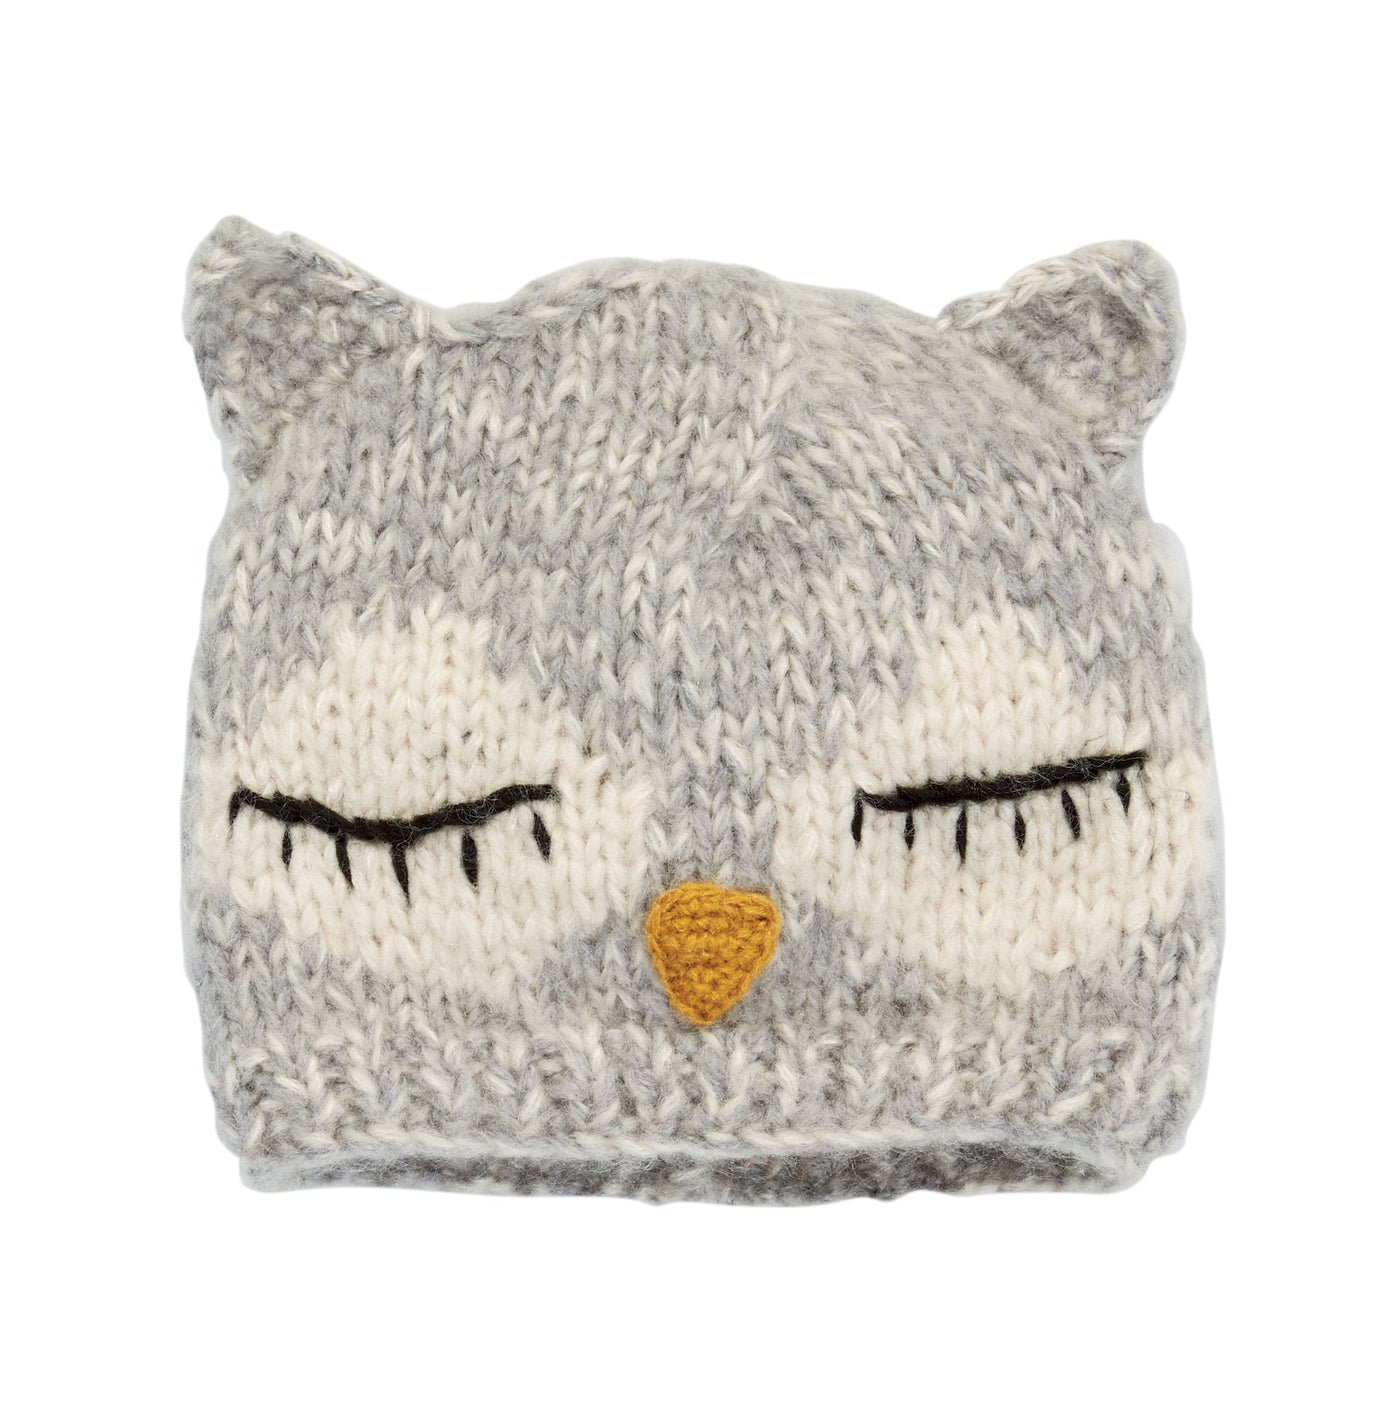 BEANIE - Kids Knit Sleeping Owl Beanie